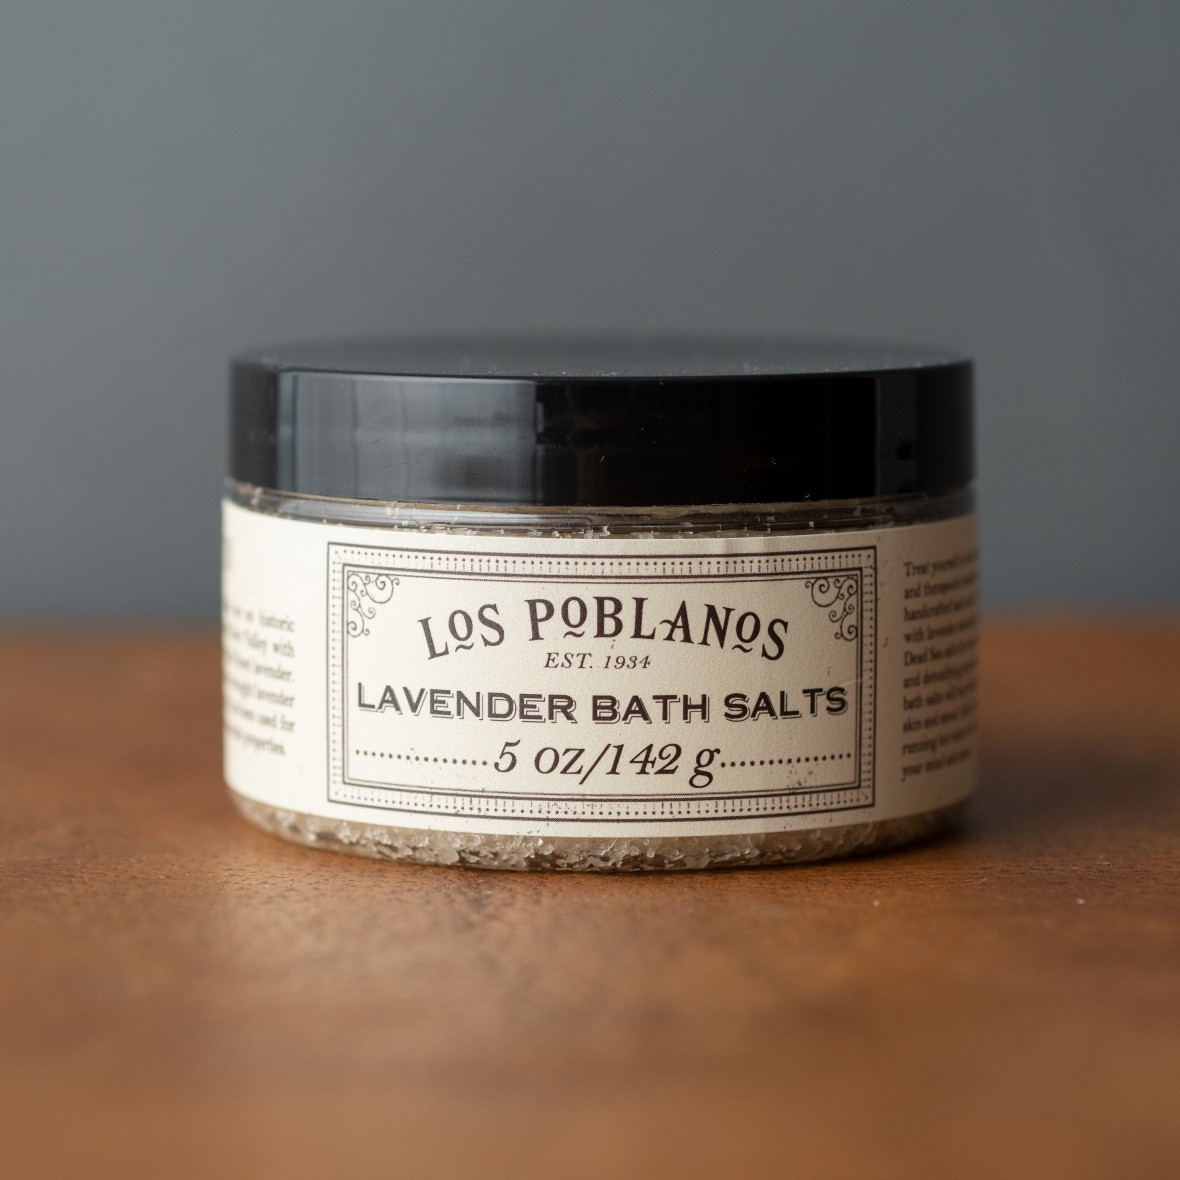 Los Poblanos lavender bath salts